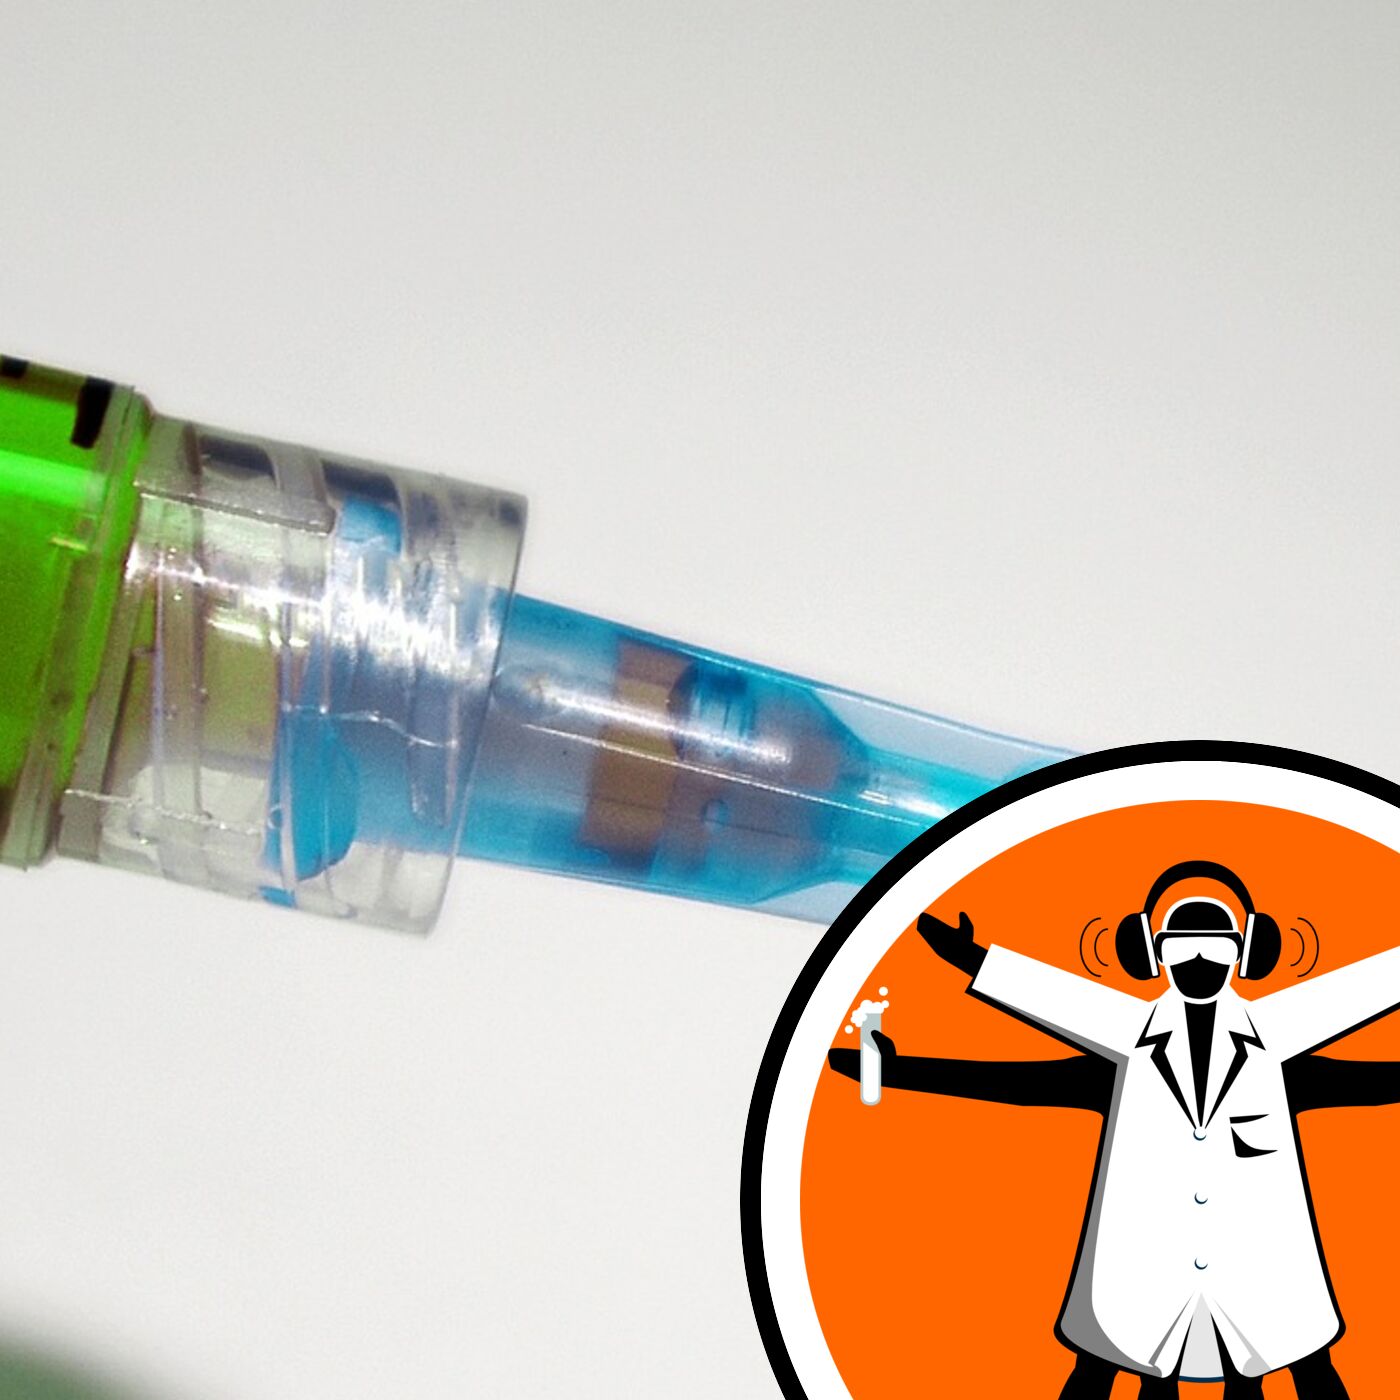 Pfizer announce Covid-19 vaccine